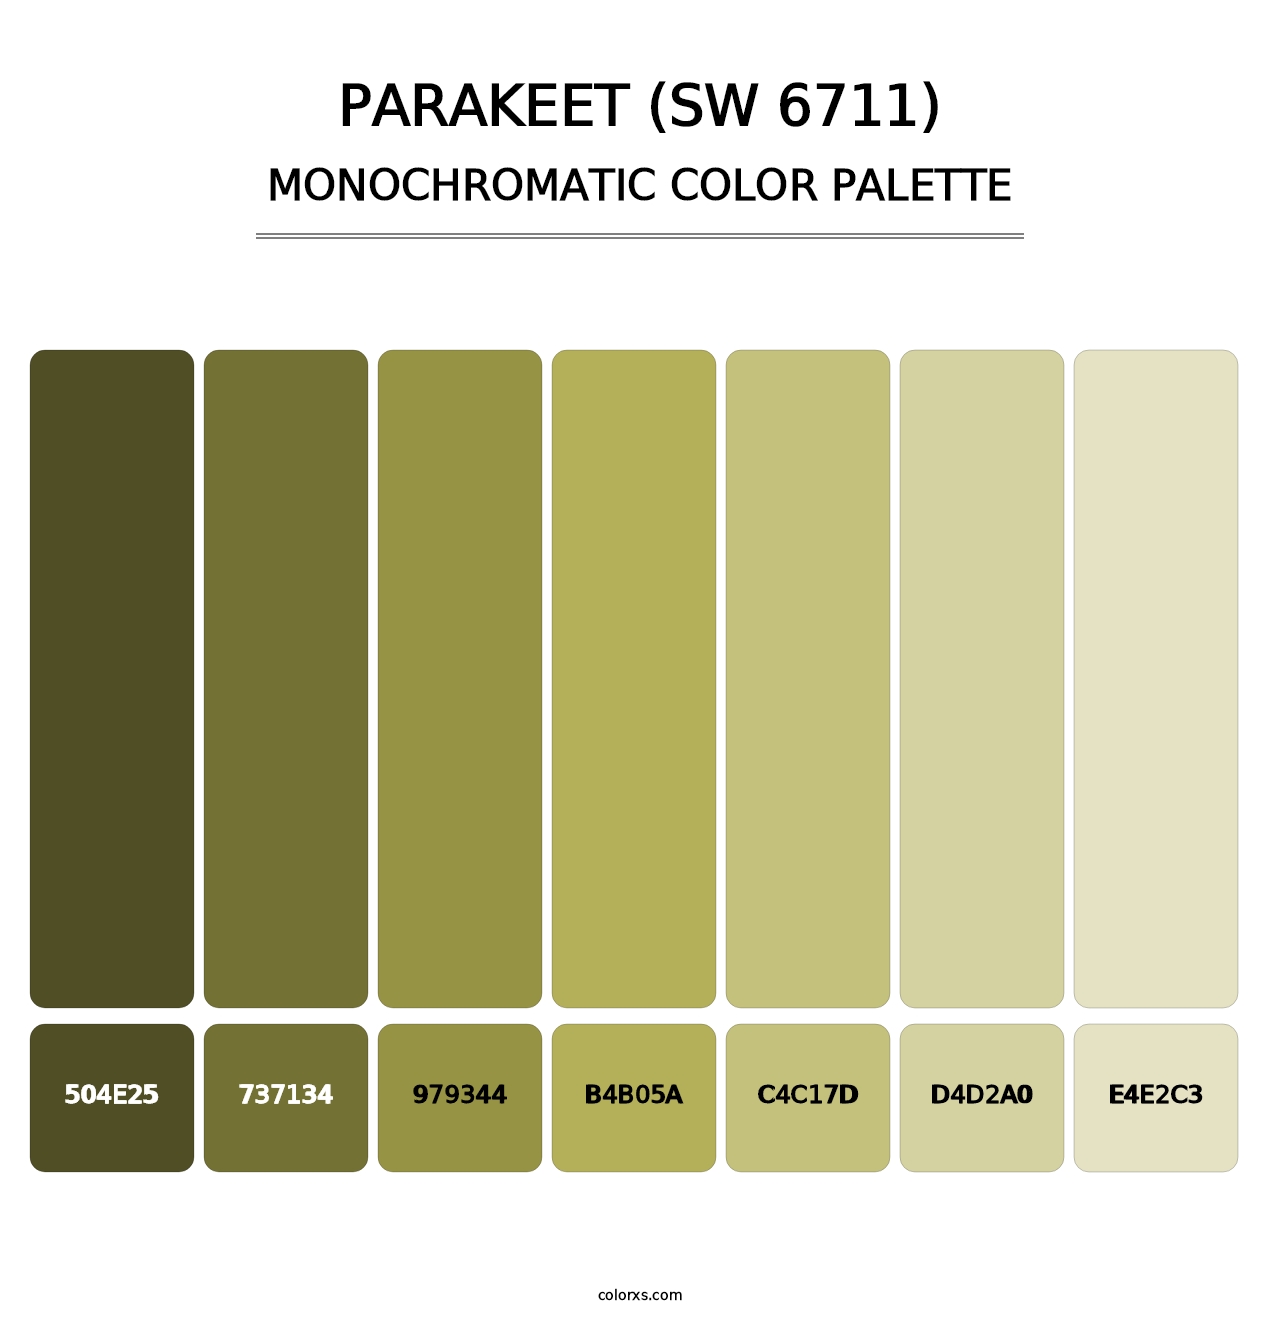 Parakeet (SW 6711) - Monochromatic Color Palette